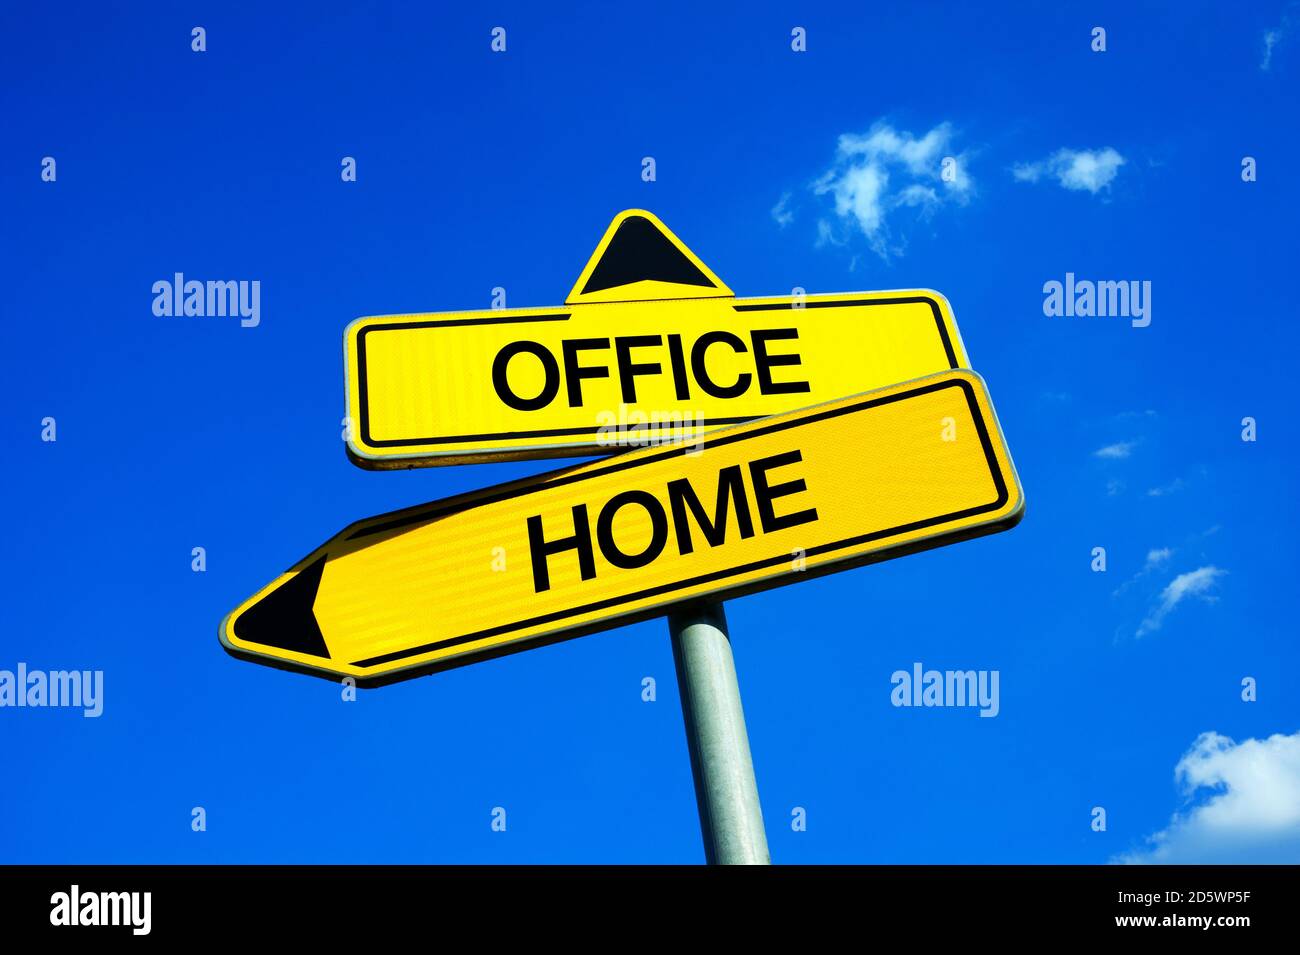 Office vs Home - Verkehrsschild mit zwei Optionen - Mitarbeiter als Heimarbeiter und mit isoliertem Arbeitsplatz im eigenen privaten Bereich Haus und Raum vs Arbeit in col Stockfoto